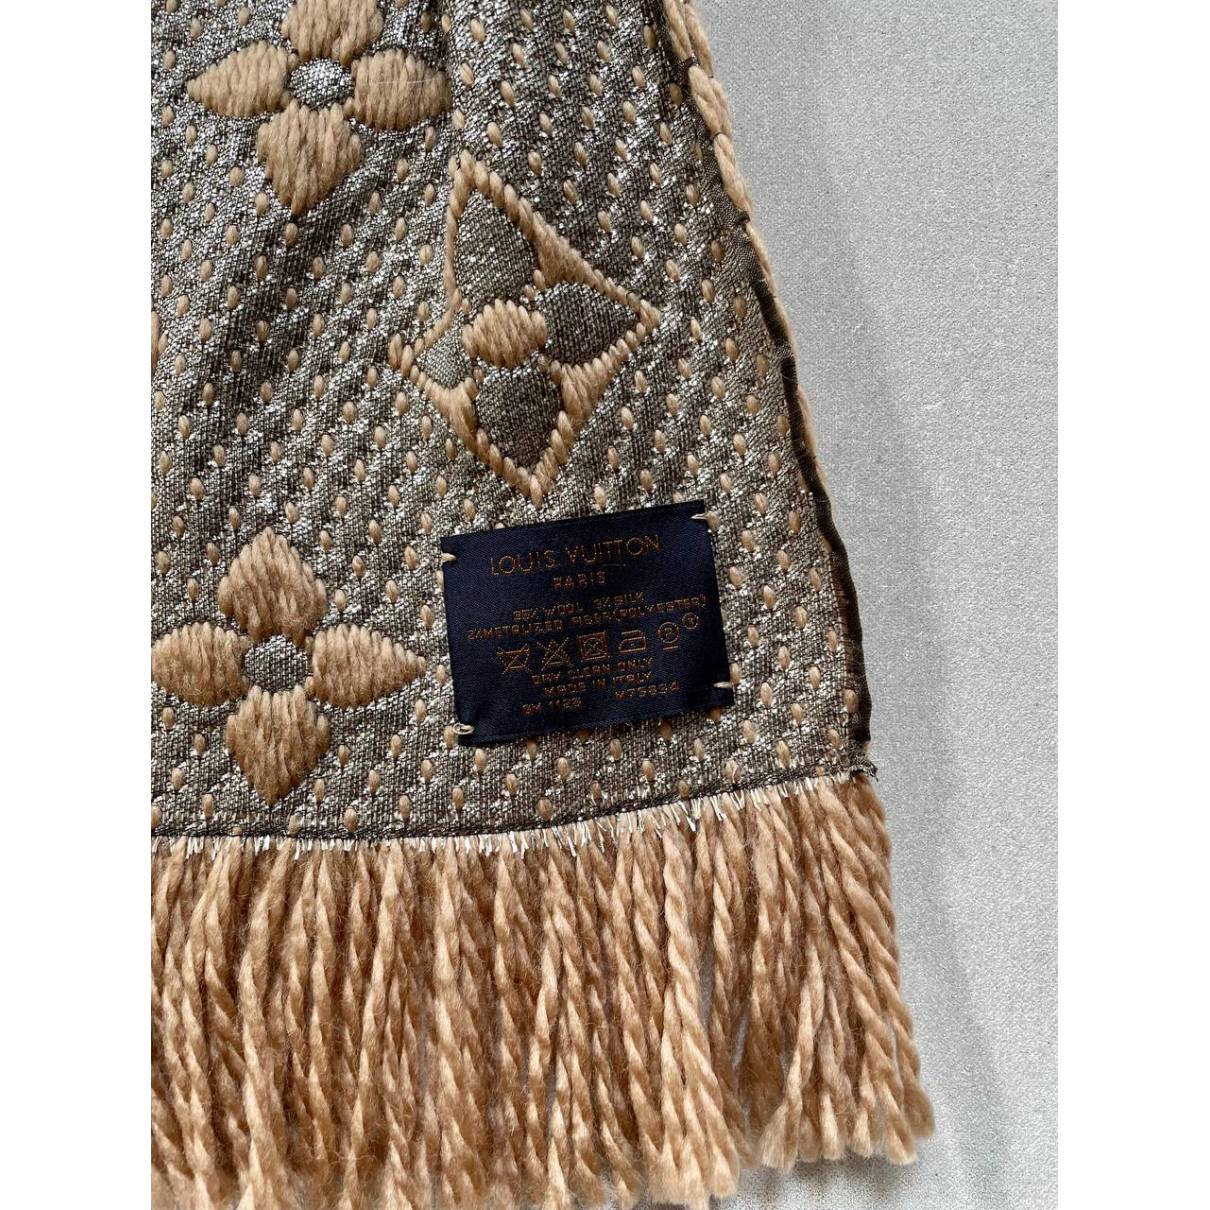 Louis Vuitton Beige Monogram Cashmere Blend Scarf